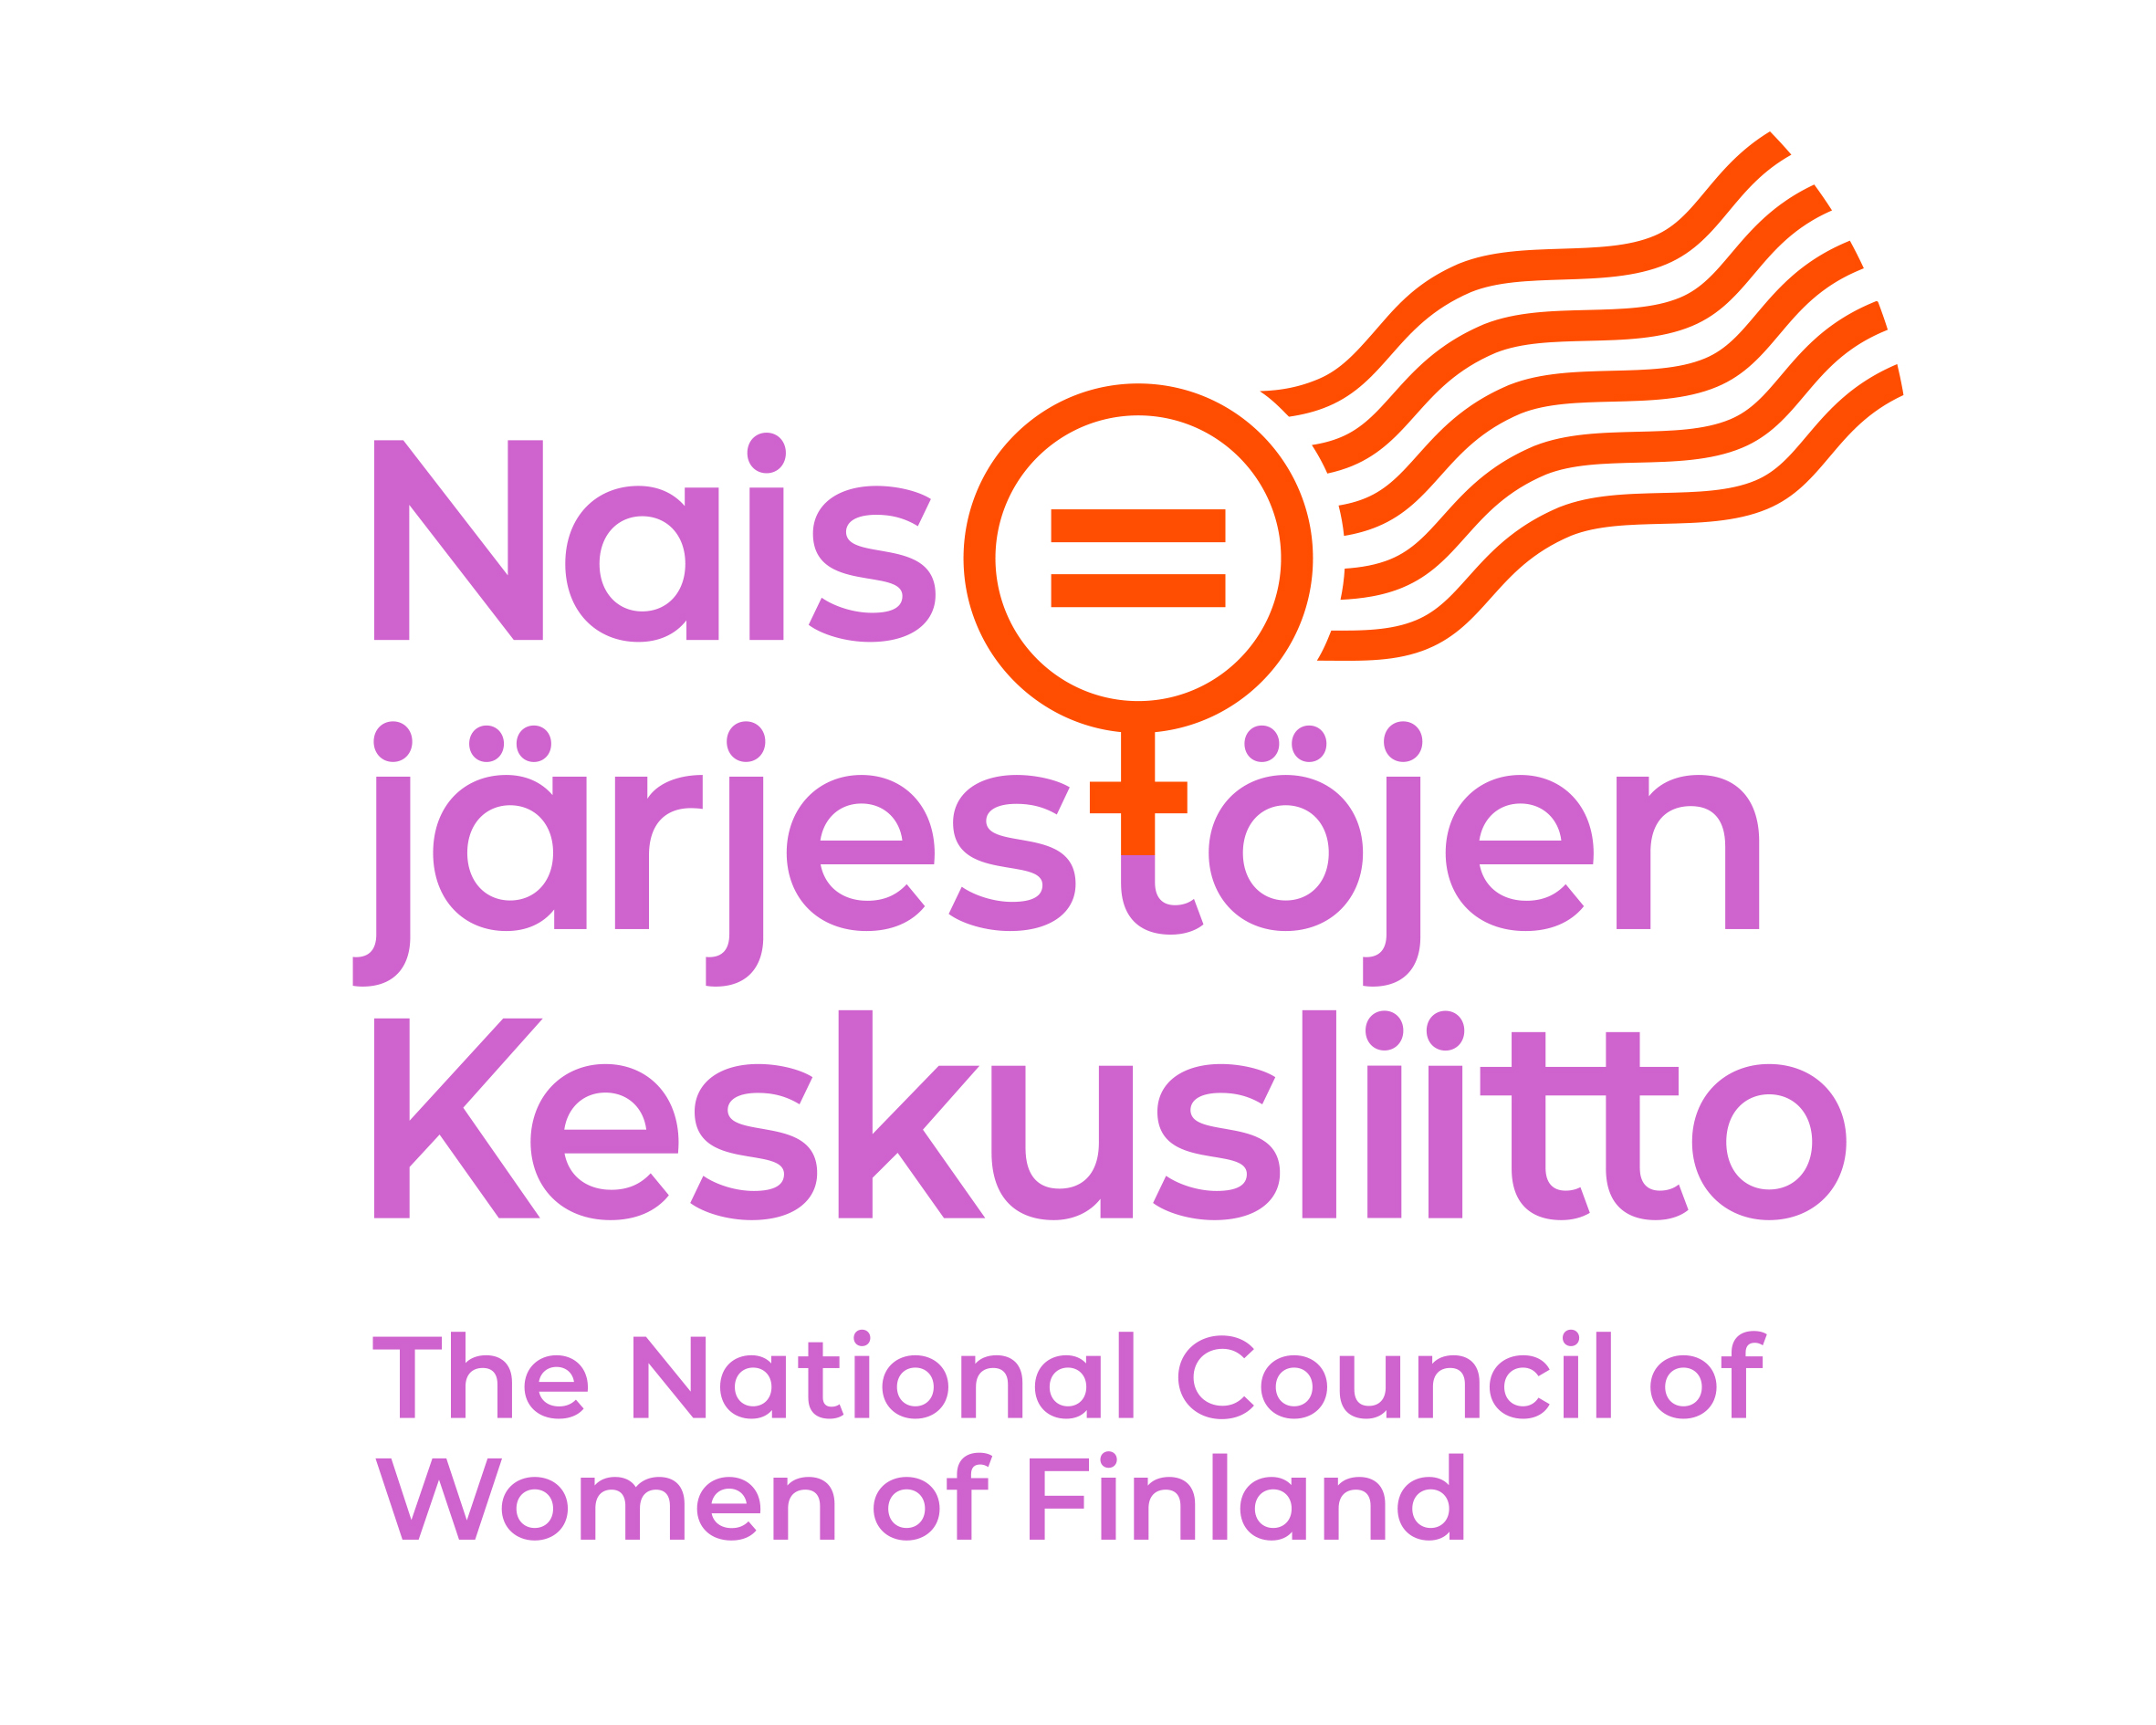 Naisjärjestöjen Keskusliitto logo